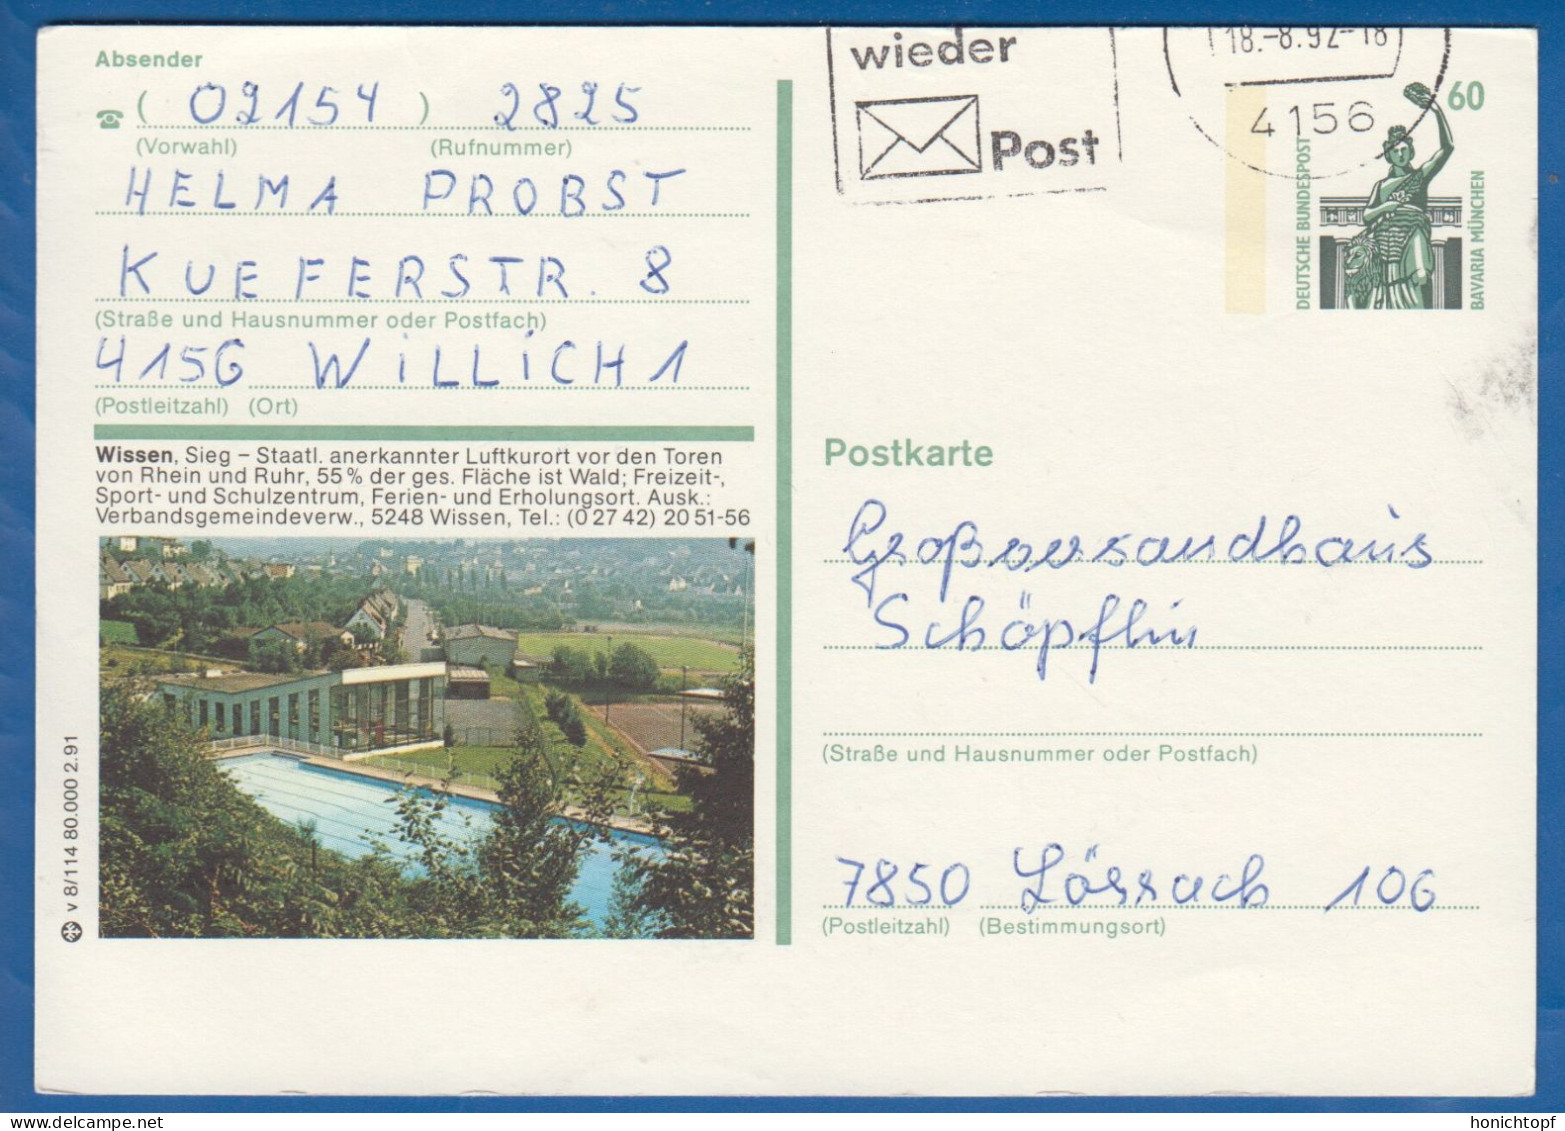 Deutschland; BRD; Postkarte; 60 Pf Bavaria München; Wissen, Sieg; Bild1 - Bildpostkarten - Gebraucht